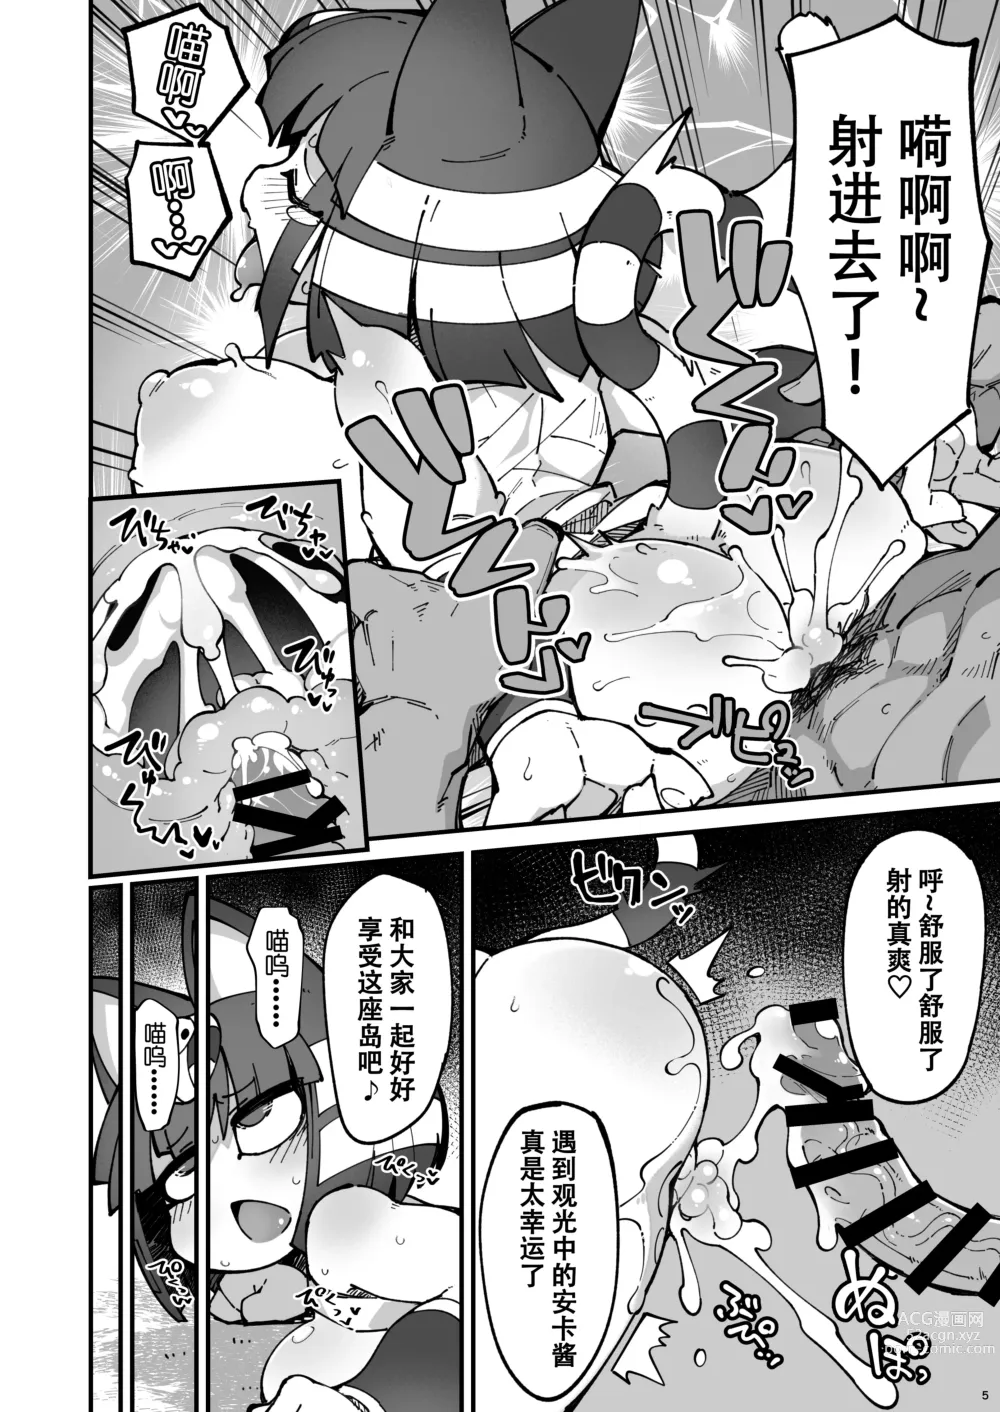 Page 6 of doujinshi Soku Hame!! Mesukemo no Mori 2